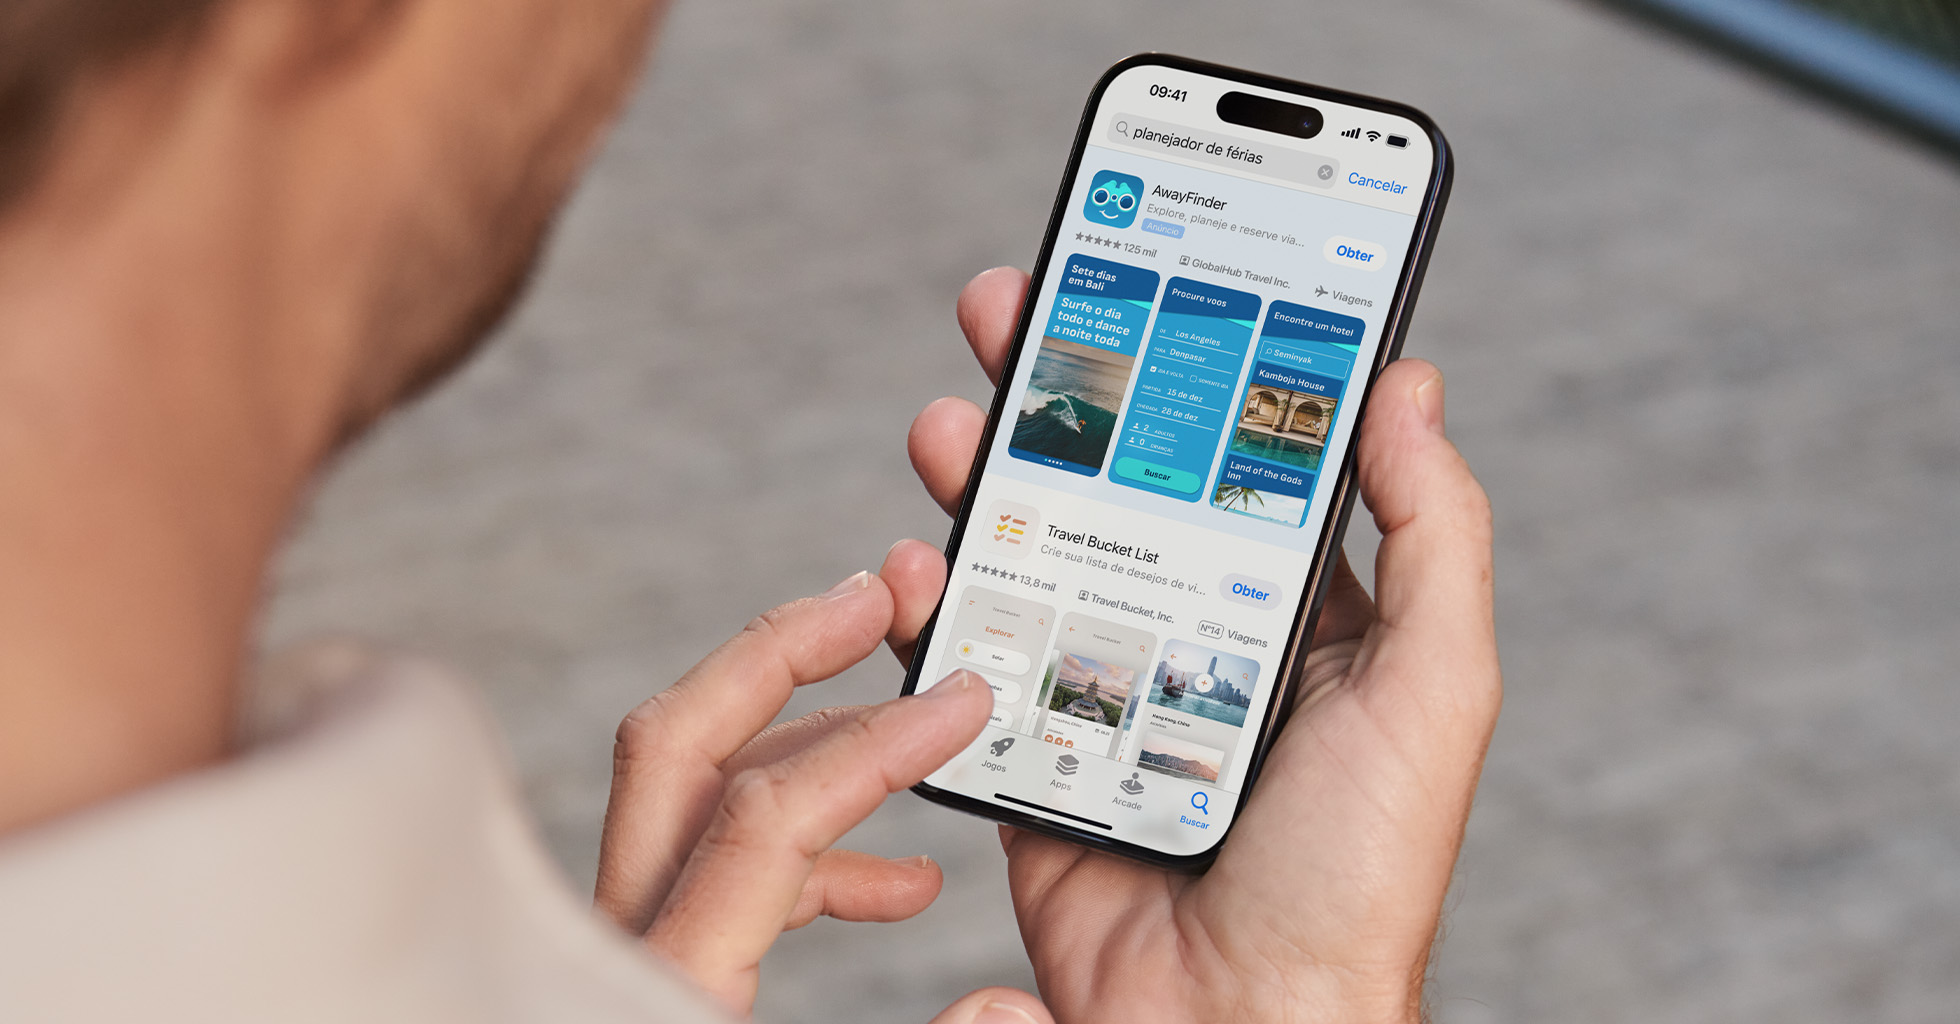 Uma pessoa busca “planejador de férias” na App Store, e o AwayFinder aparece no topo dos resultados da busca.